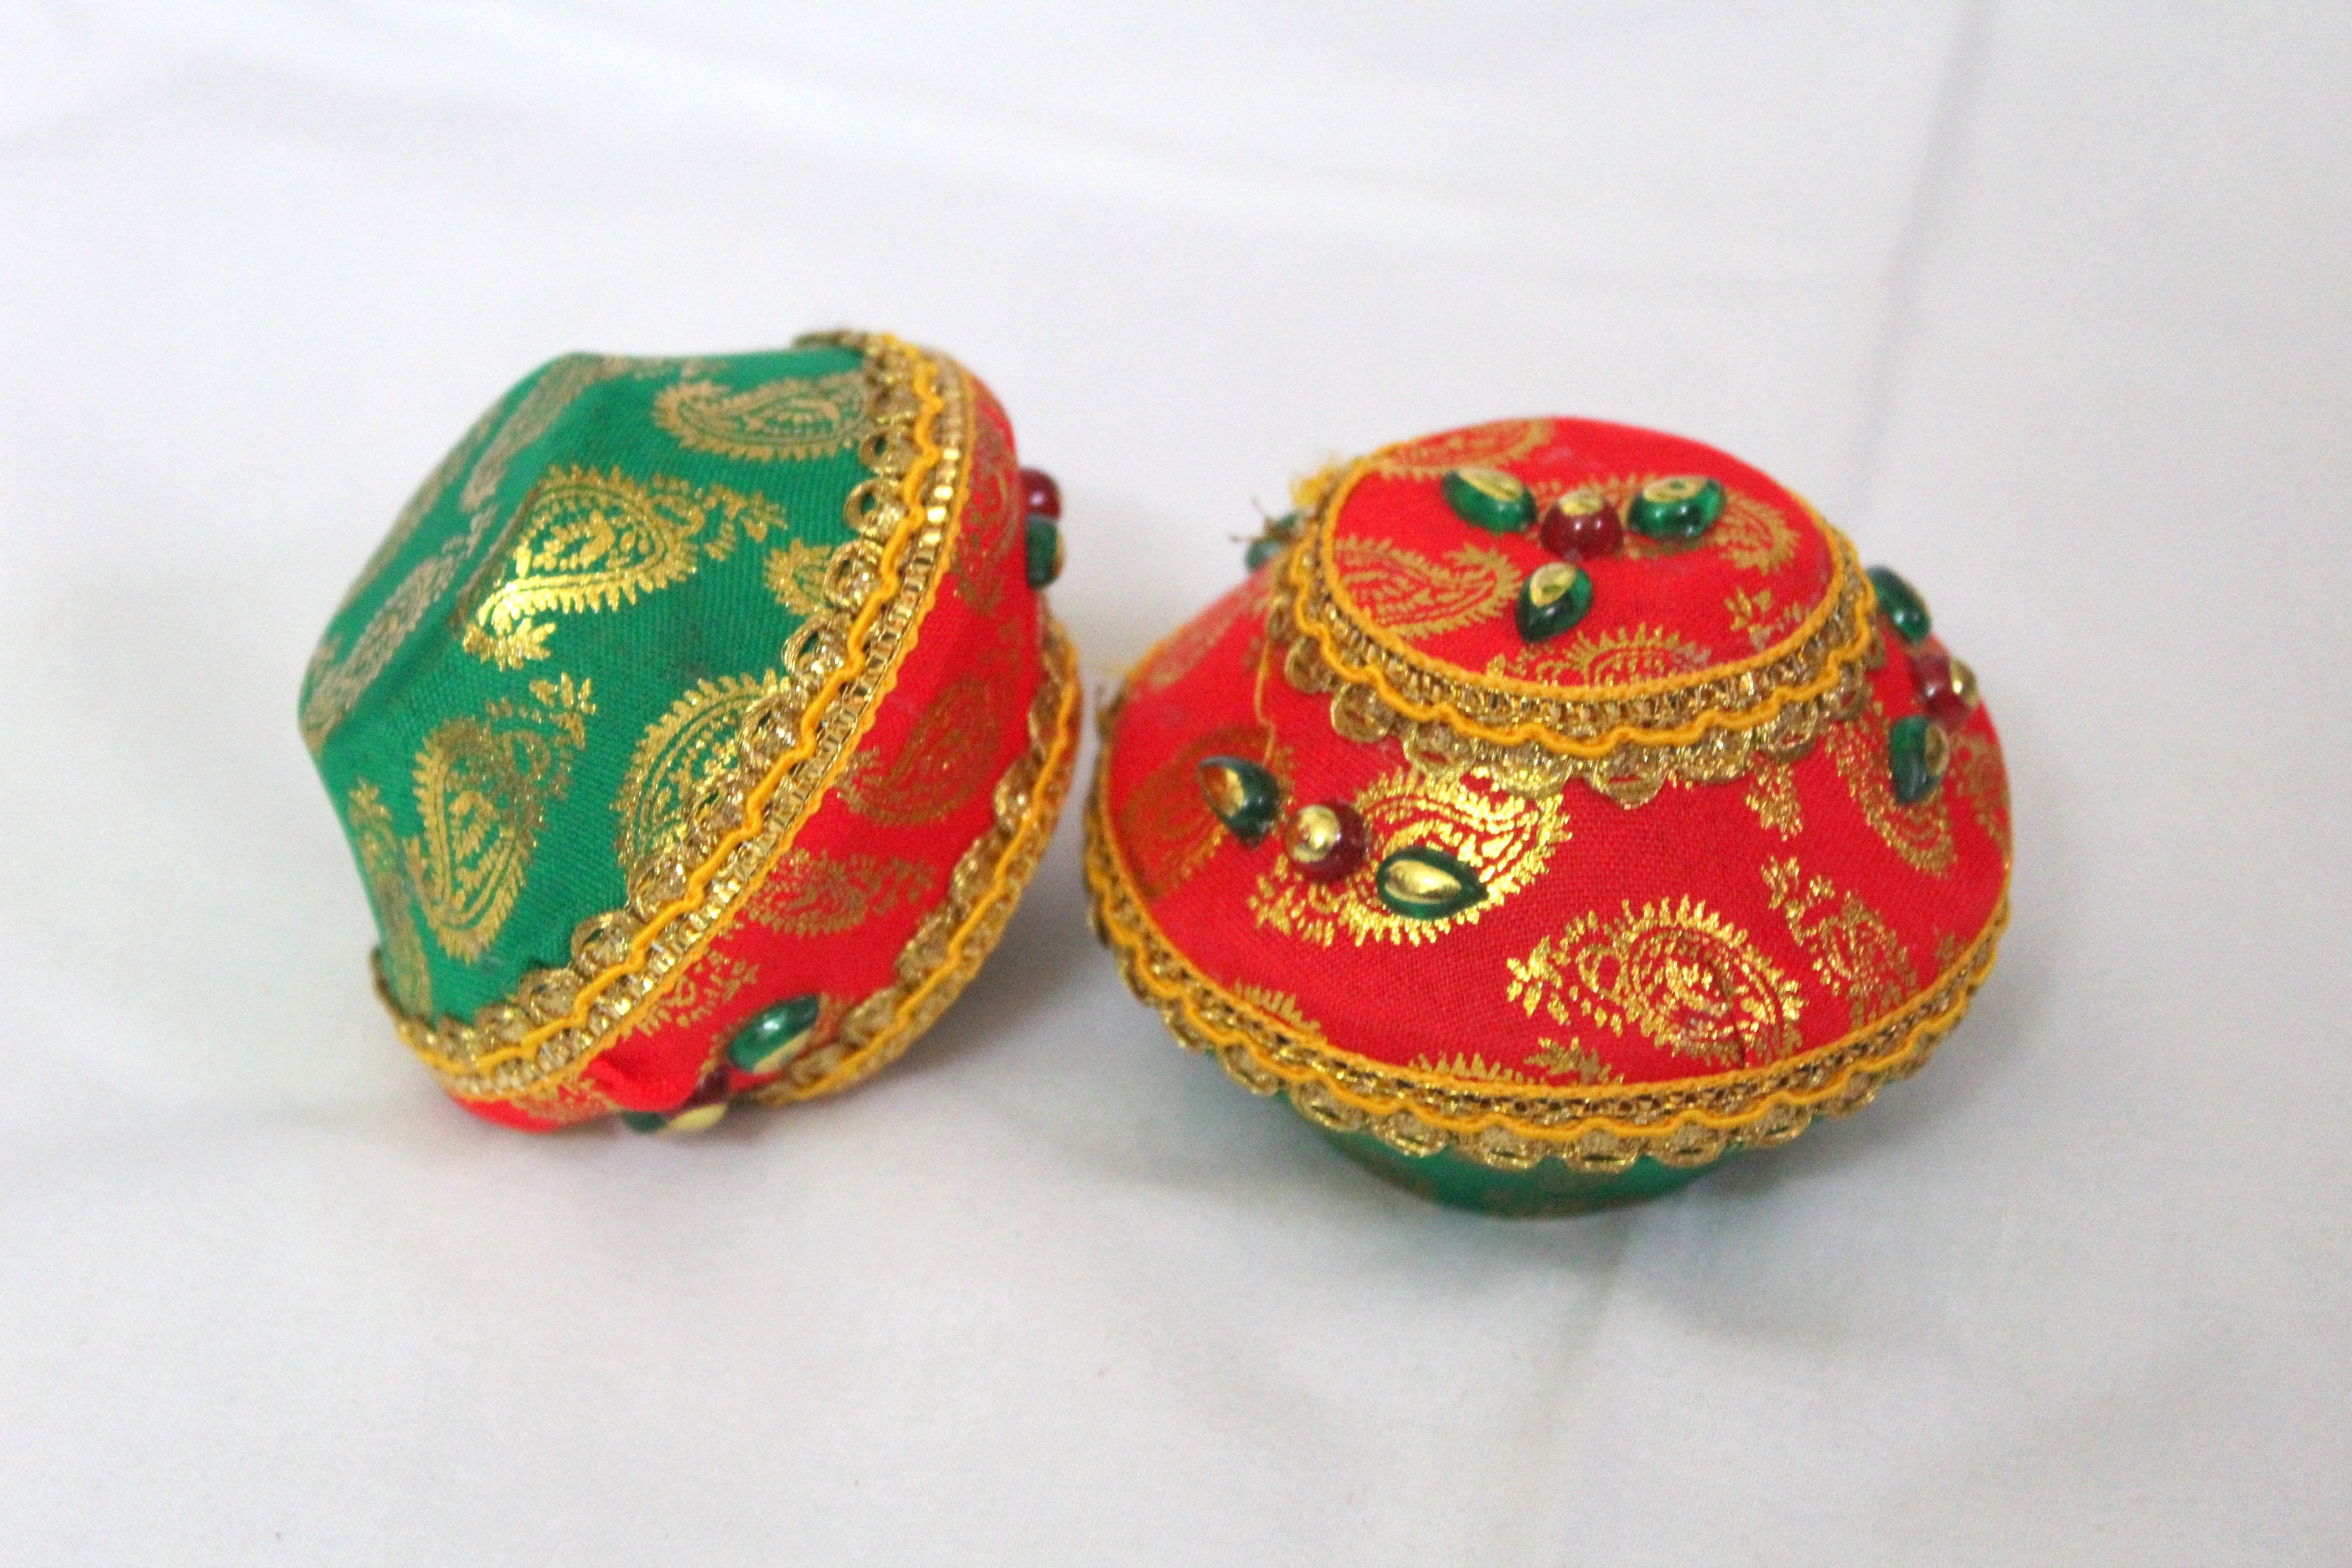 Samput - Red Clay, Hindu Wedding Ritual item (2 pieces)